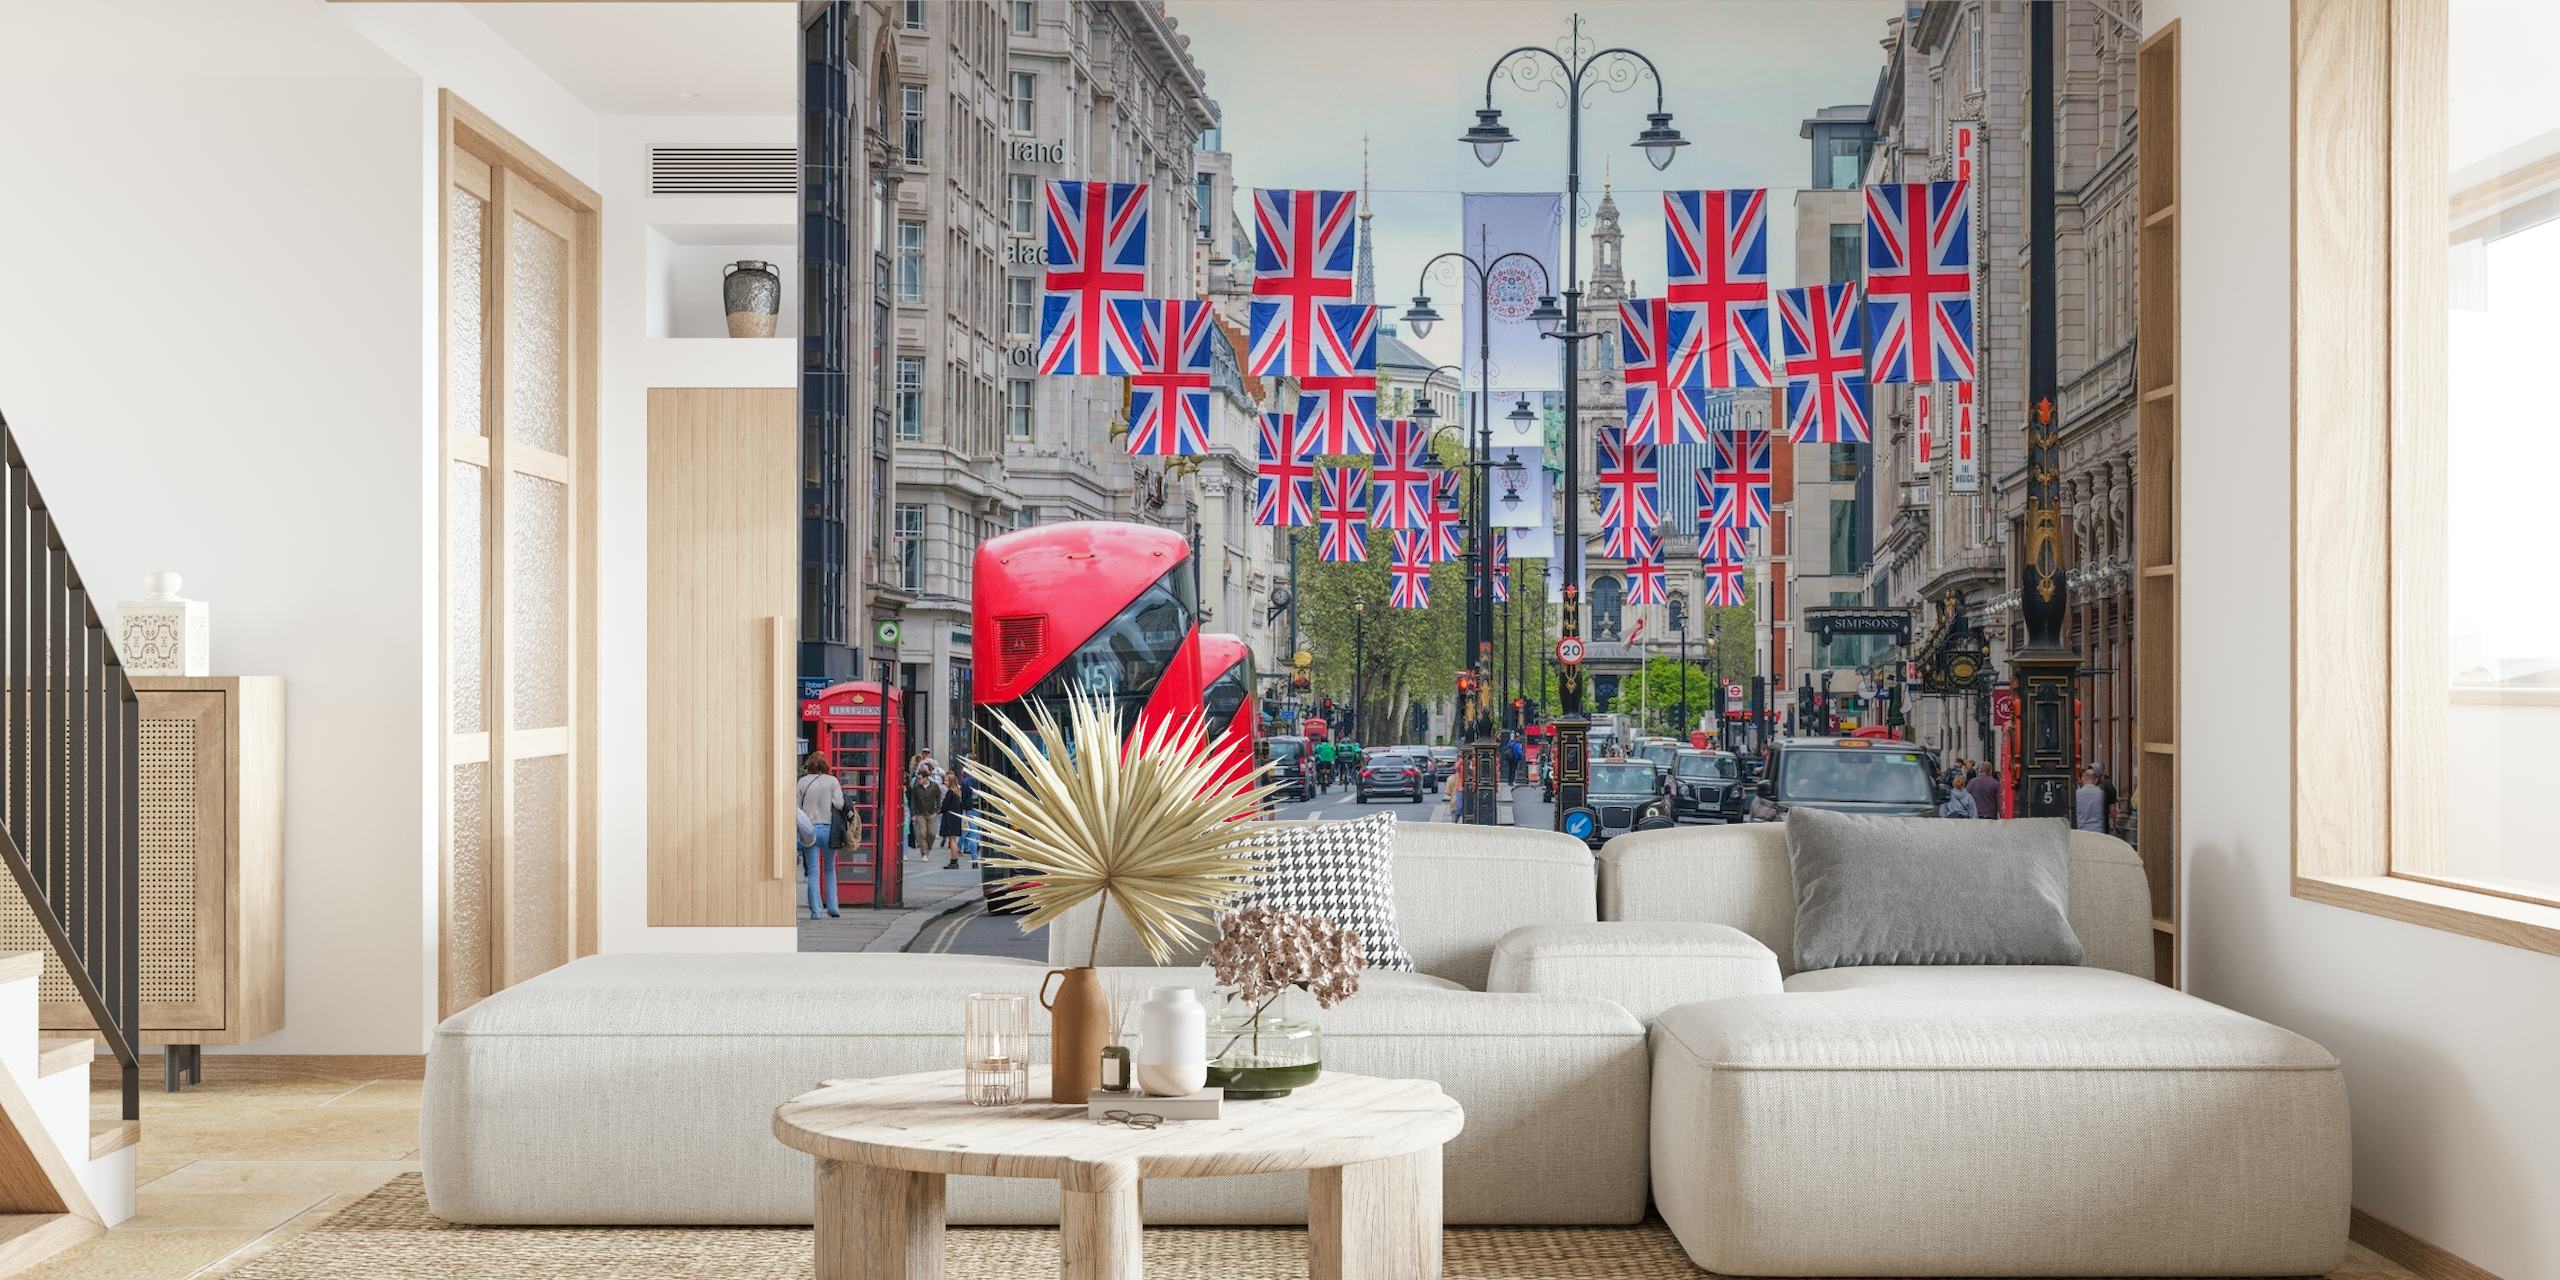 Escena callejera de Londres con banderas Union Jack y mural de pared de autobús rojo de dos pisos